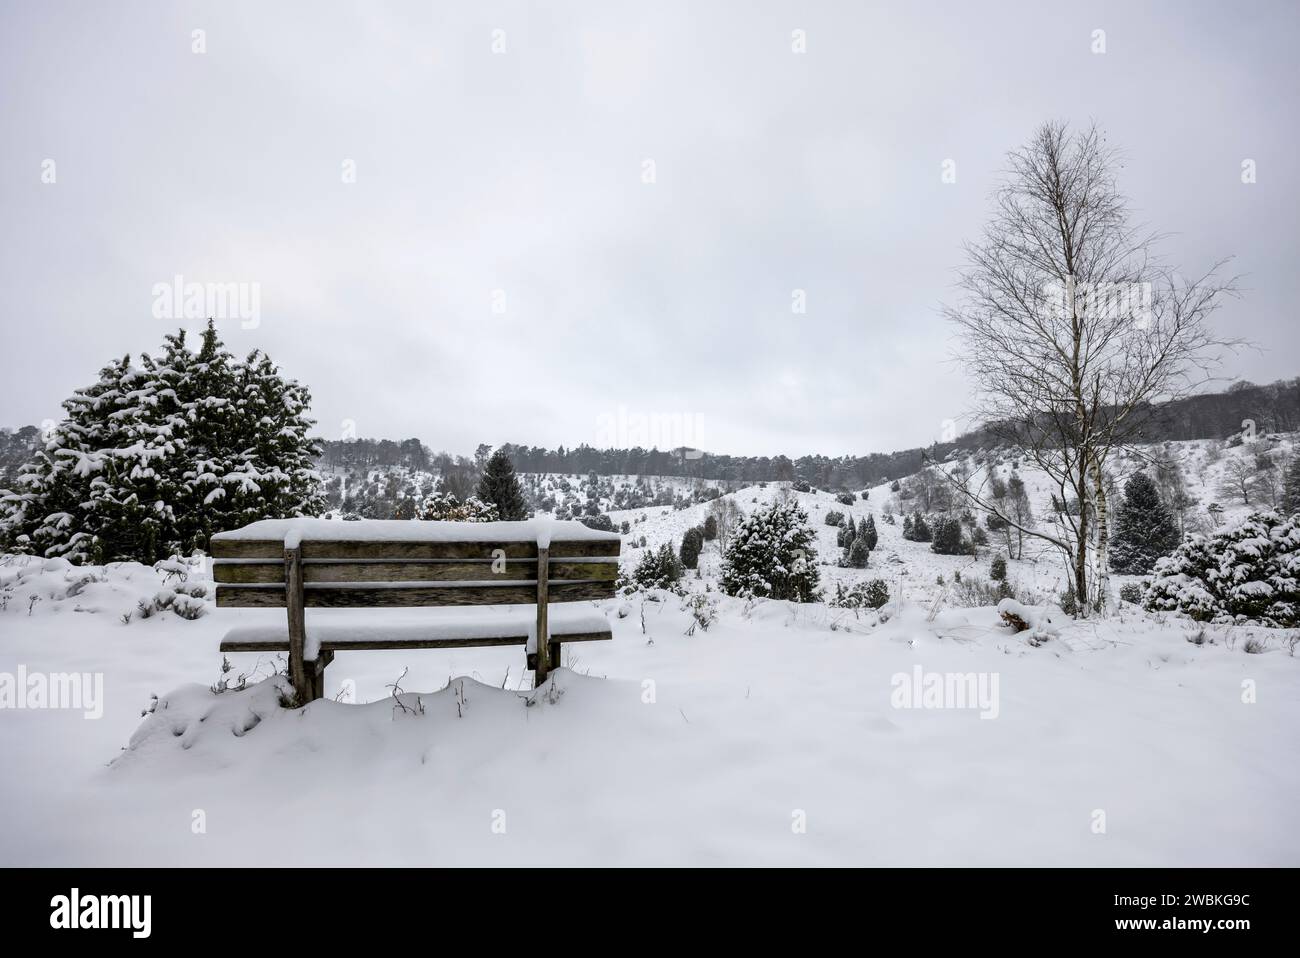 Wooden bench at Totengrund in the snowy Lüneburg Heath Stock Photo